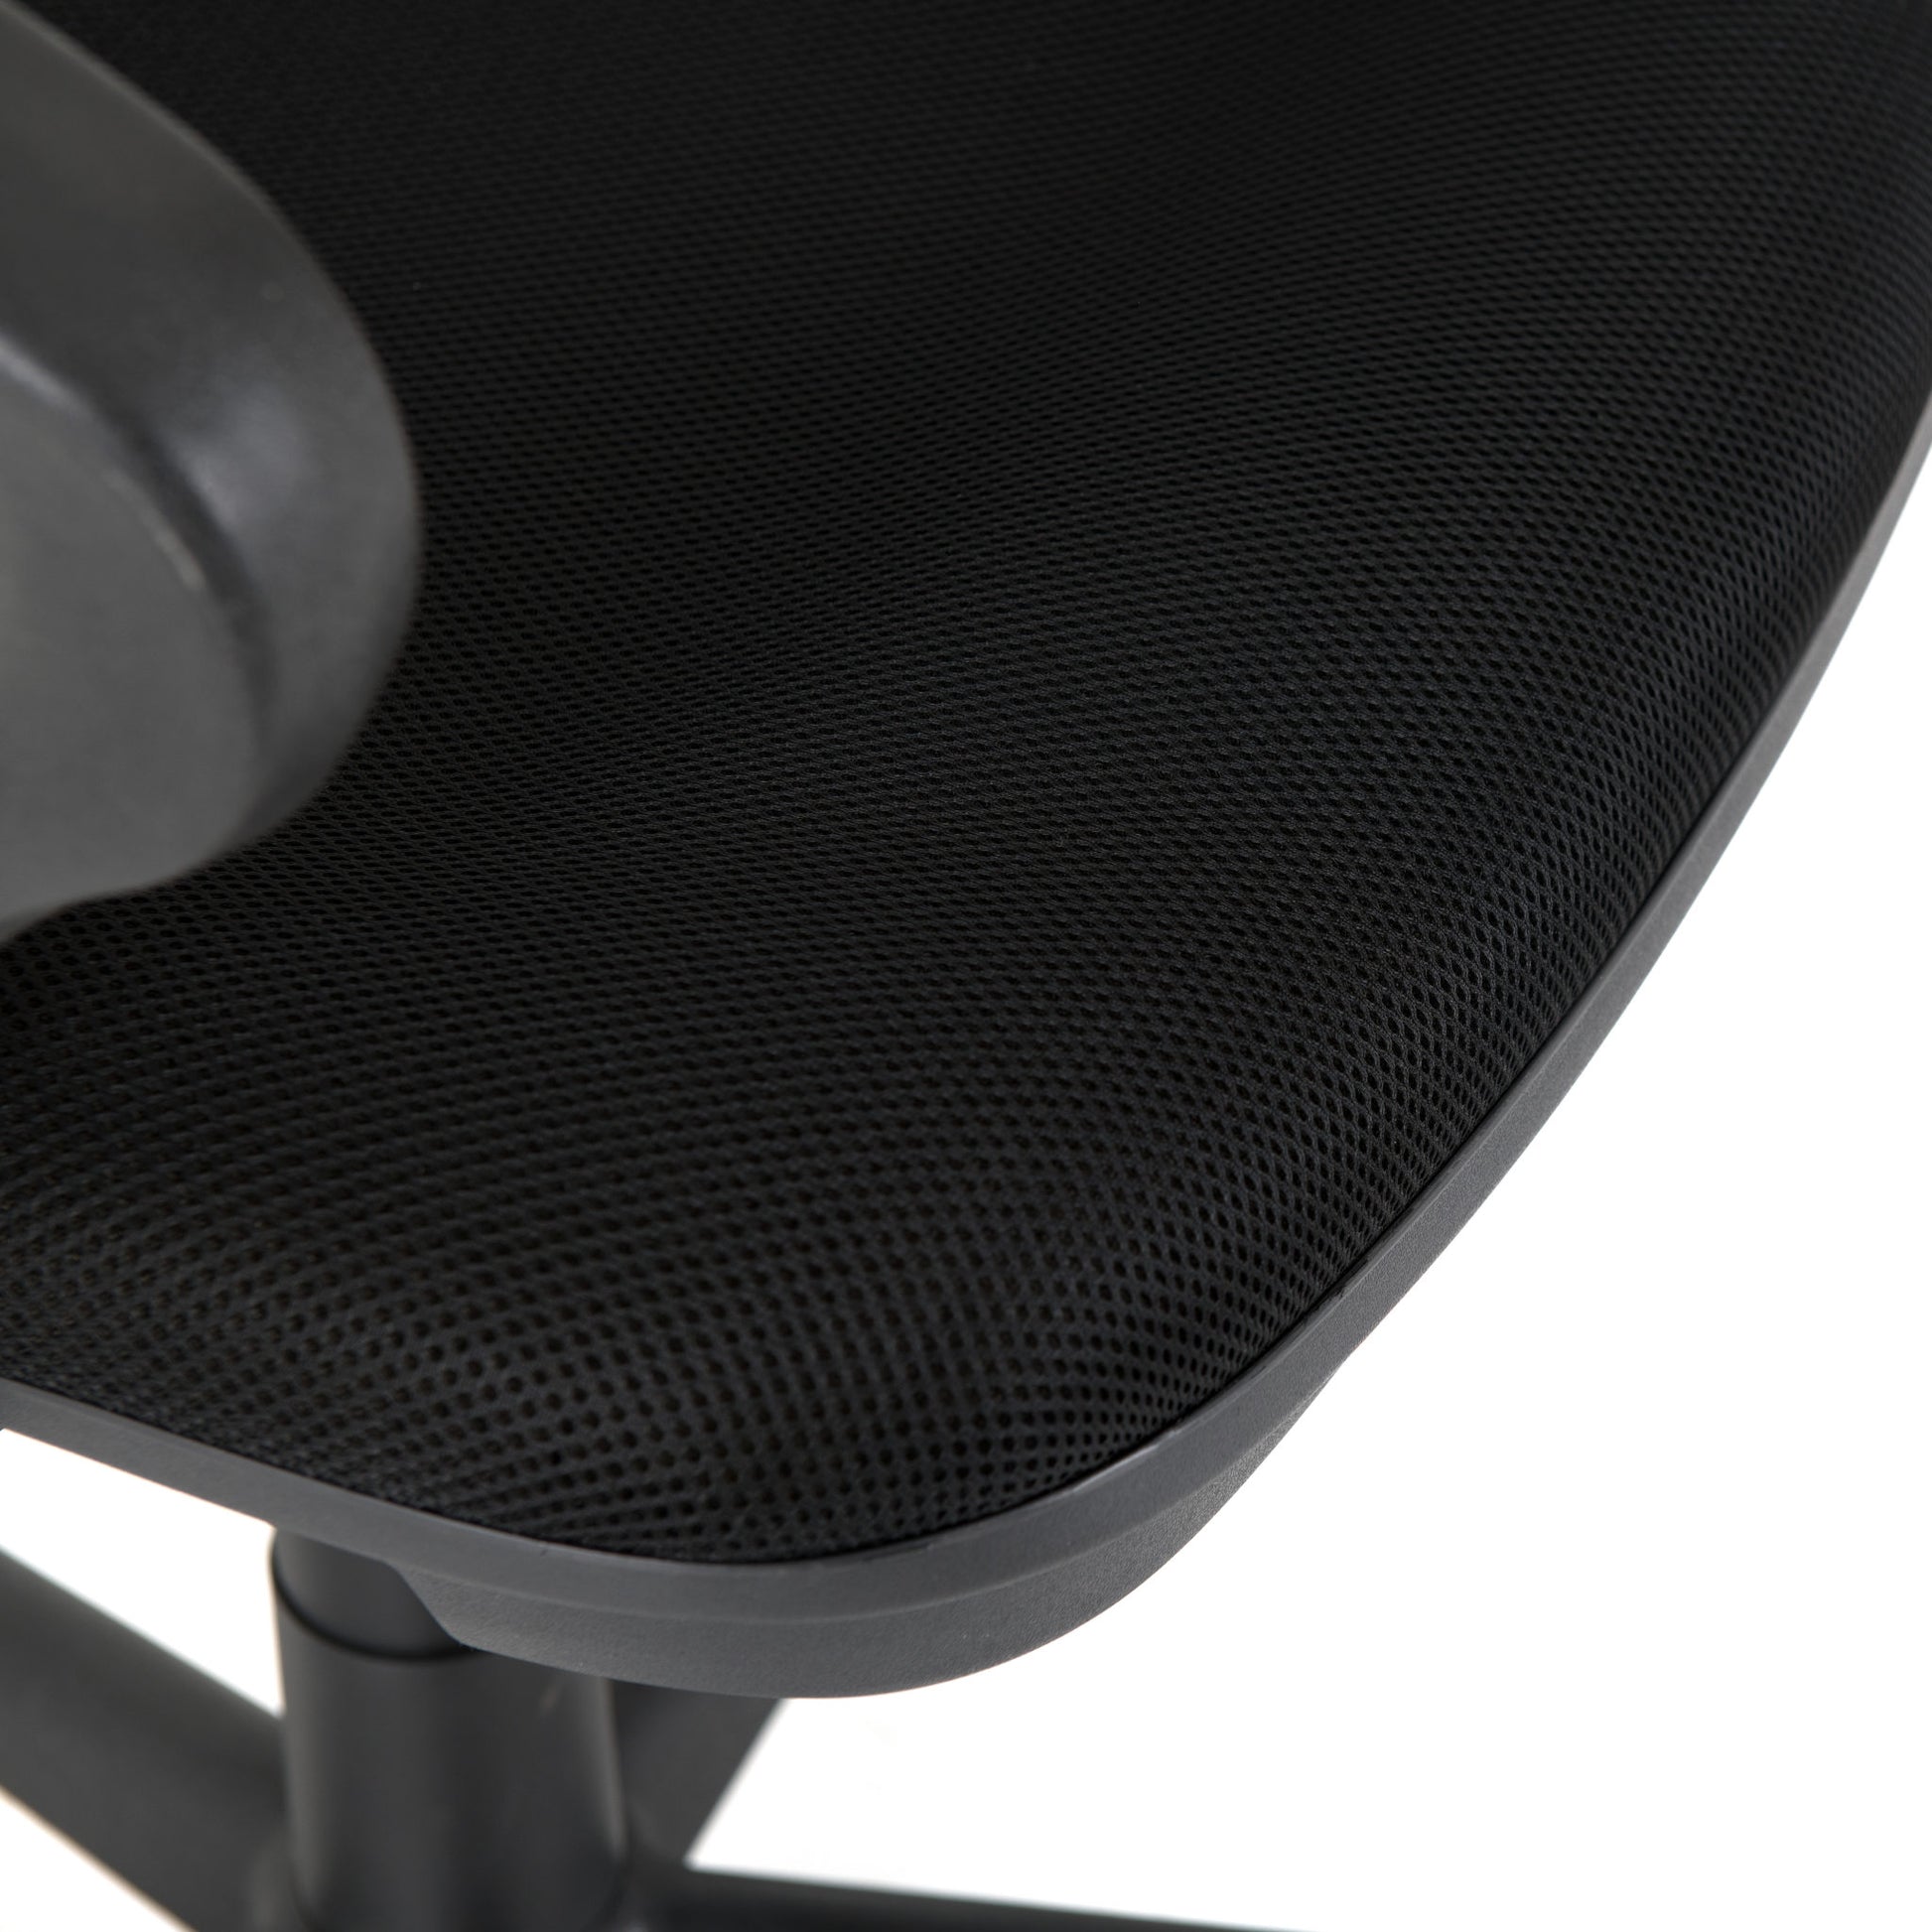 Clifton Computer Chair - Black